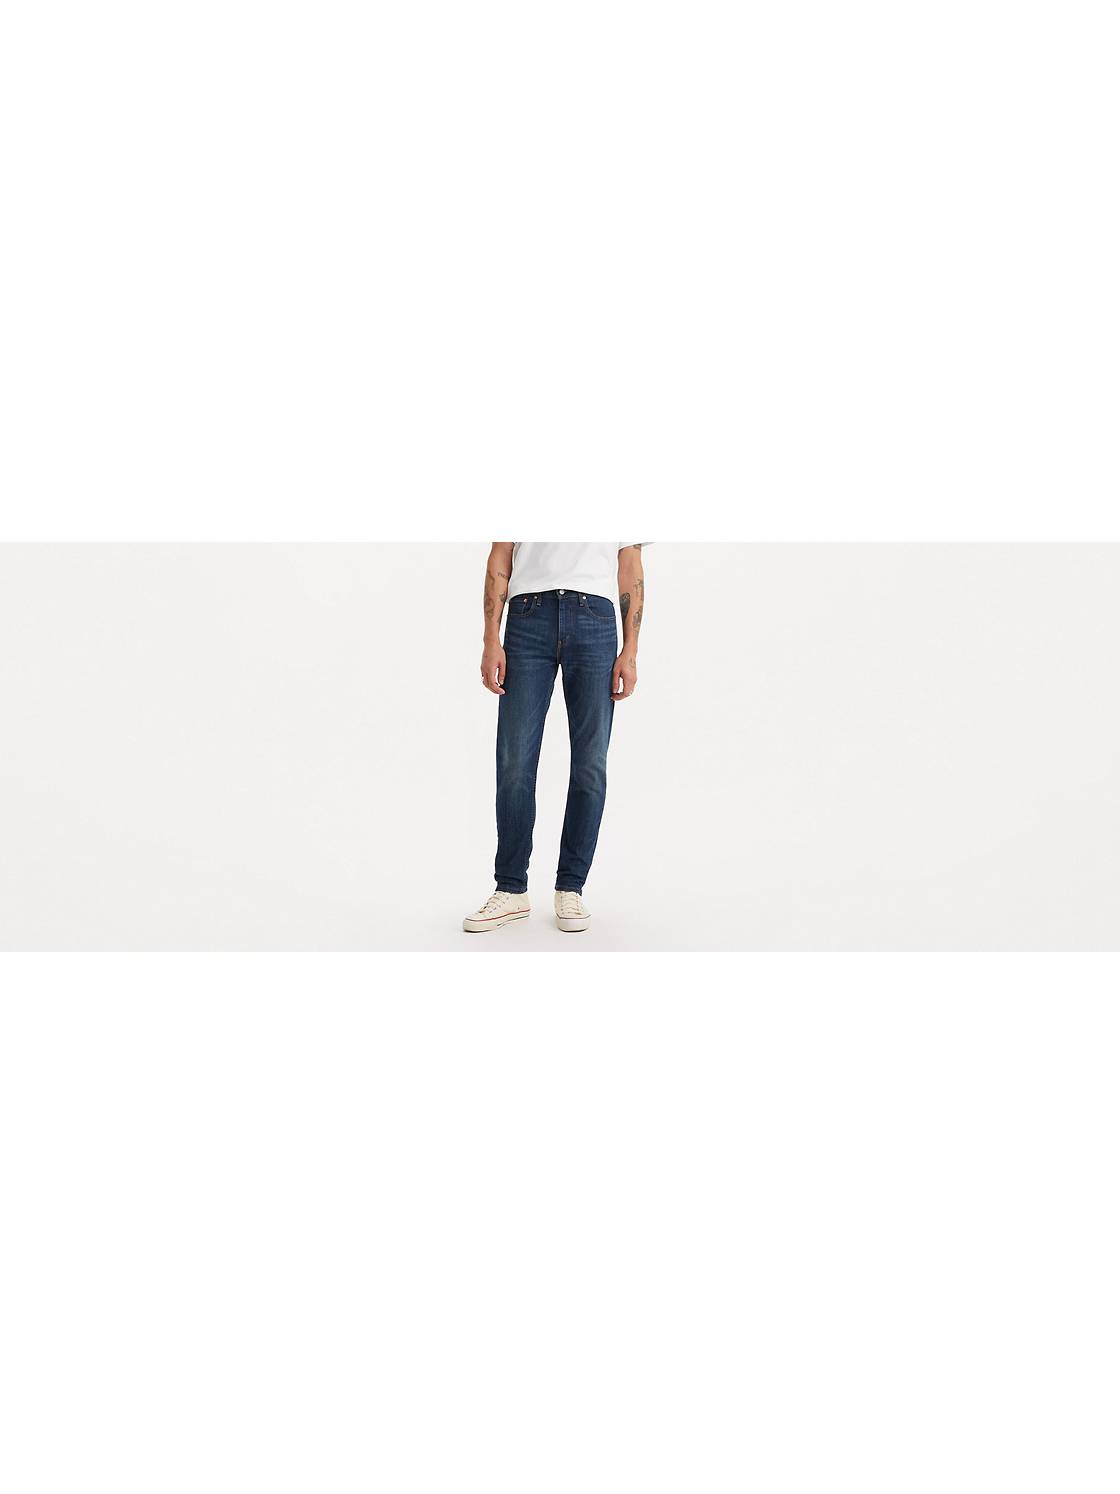 Men's Slim Tapered Jeans: Shop 512 Jeans for Men